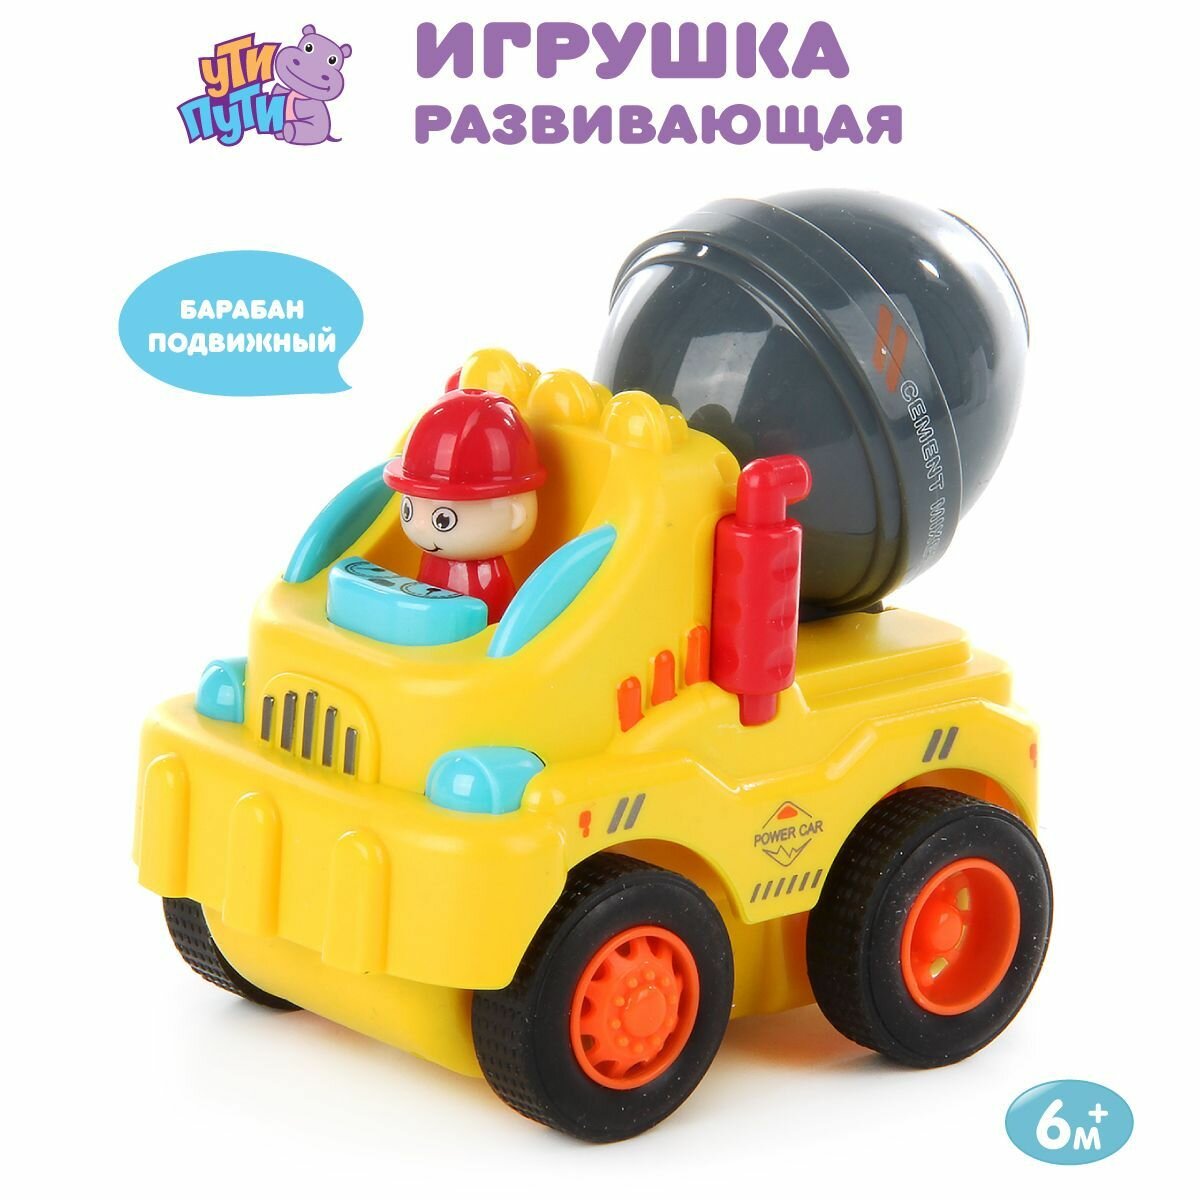 Развивающая игрушка "Машинка" для малышей, Ути Пути / Игрушечная инерционная машина для детей